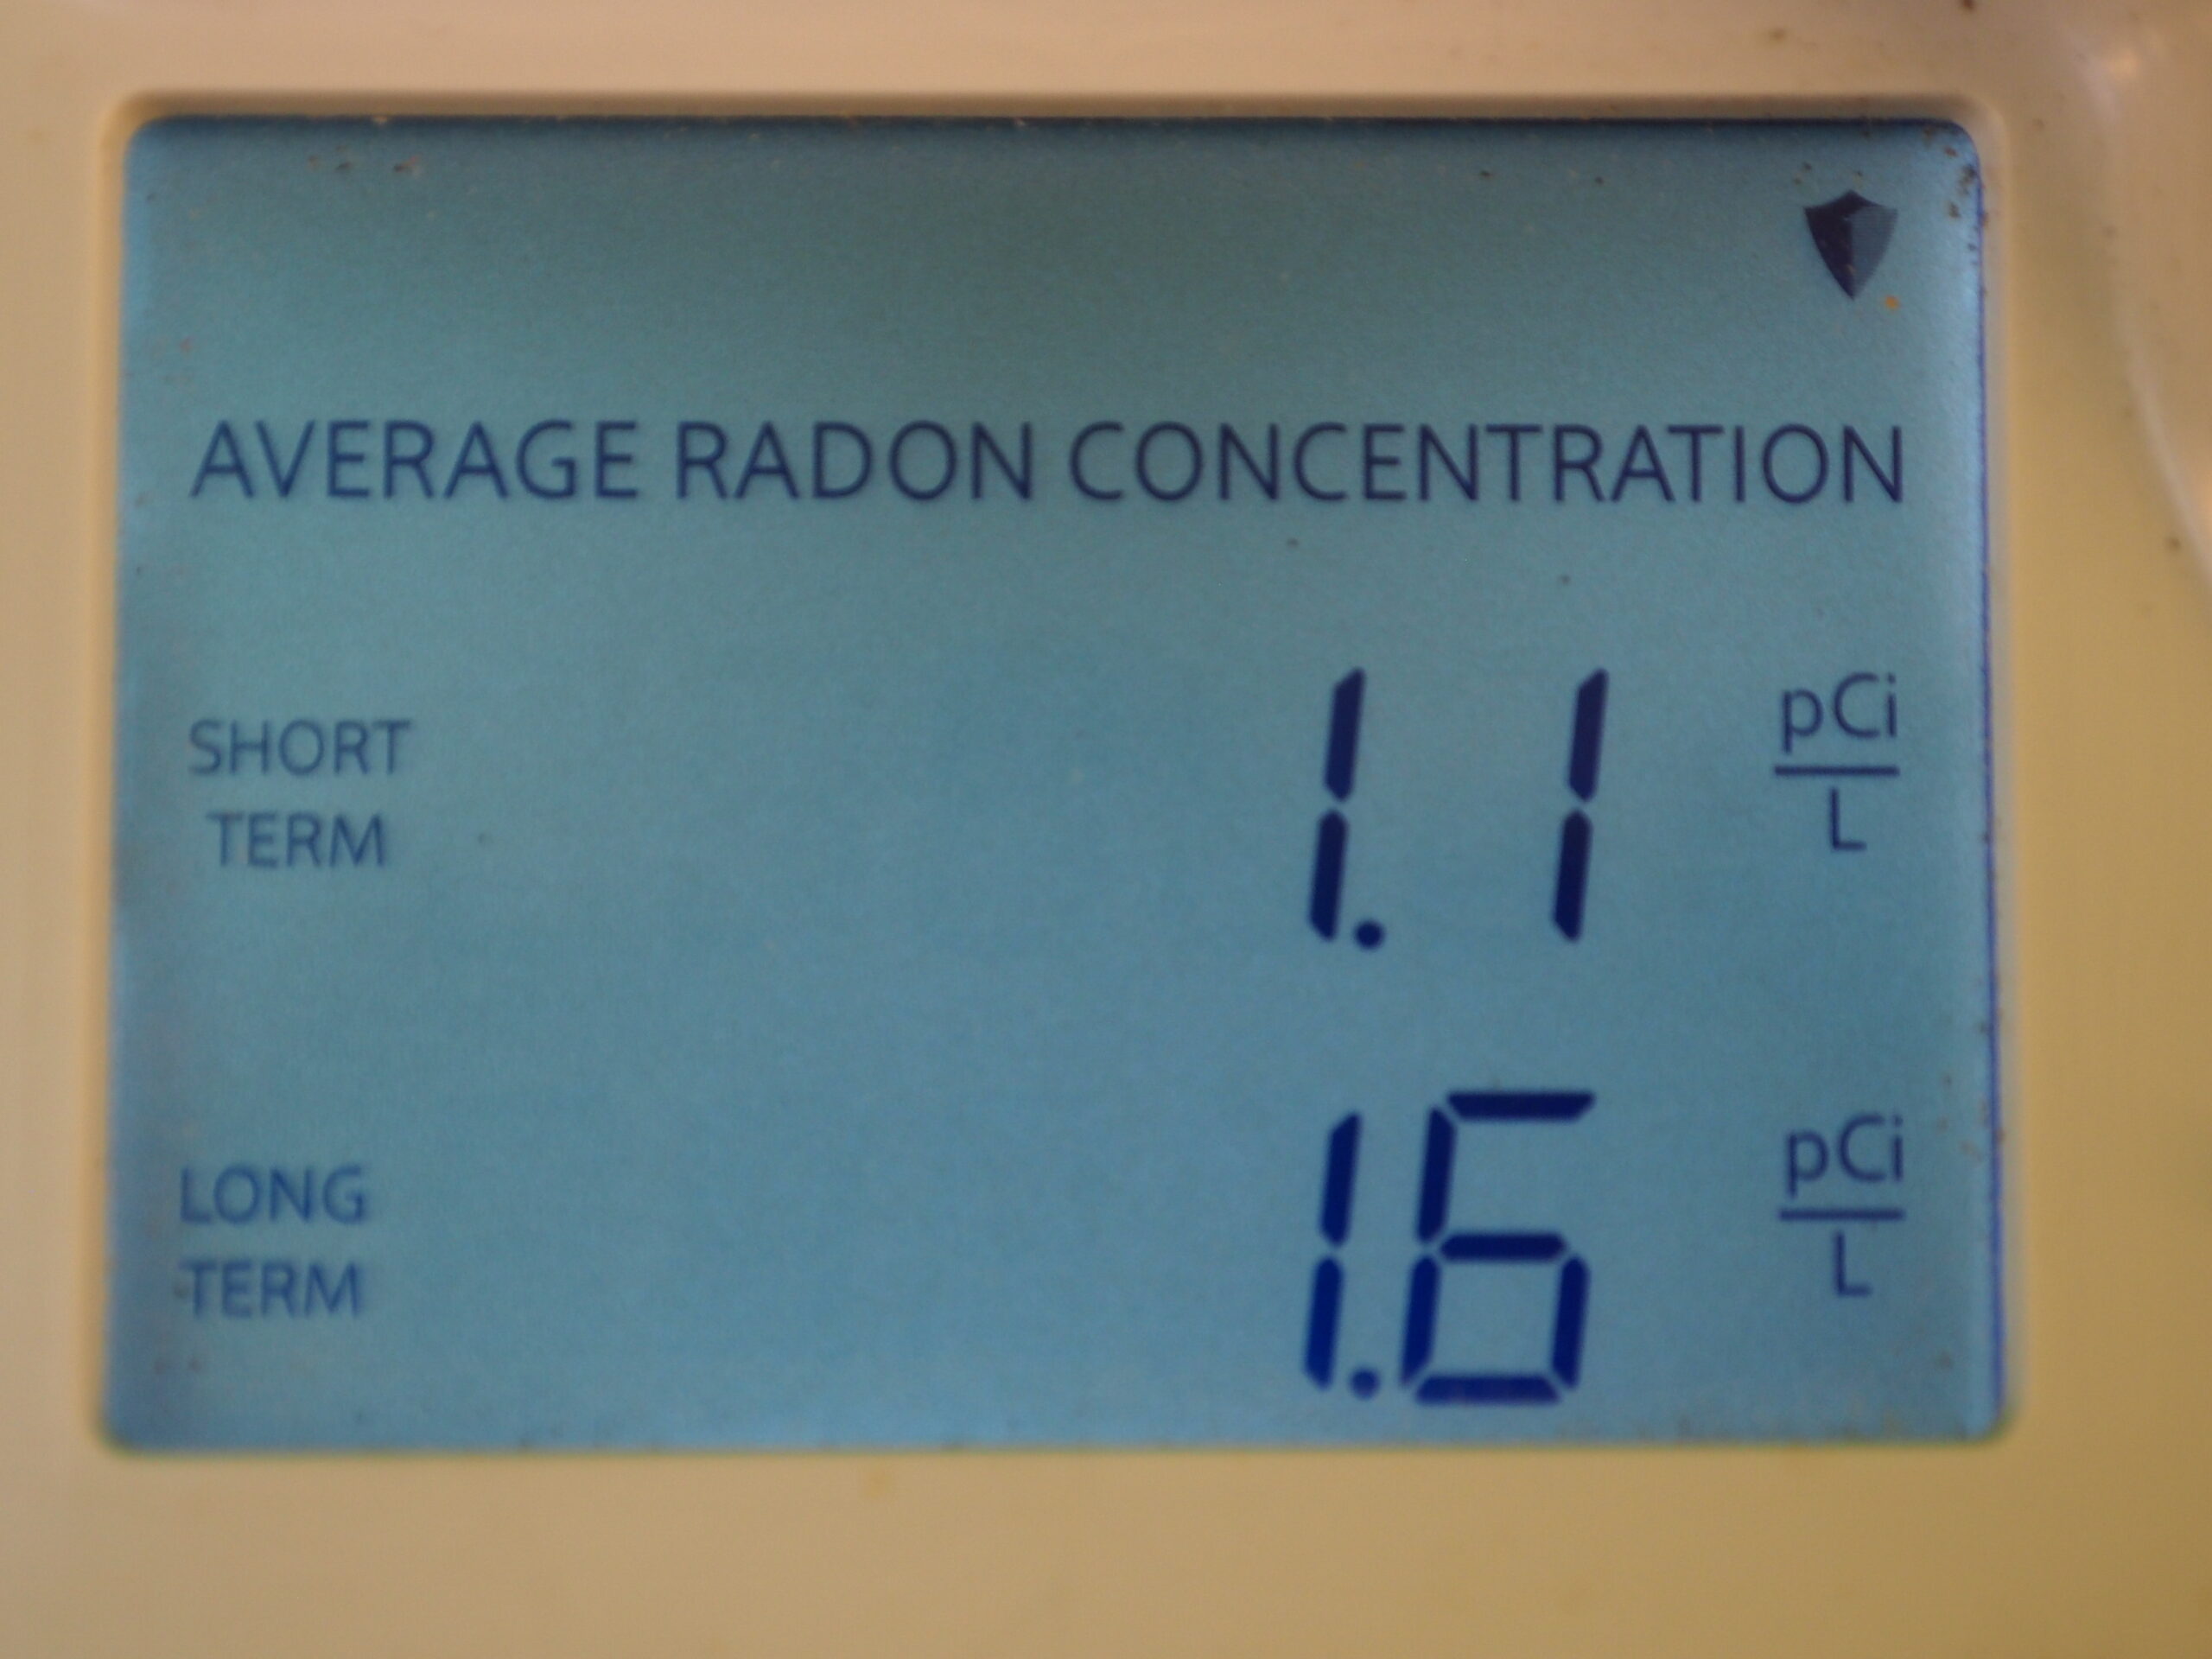 Electronic Digital Radon Meter